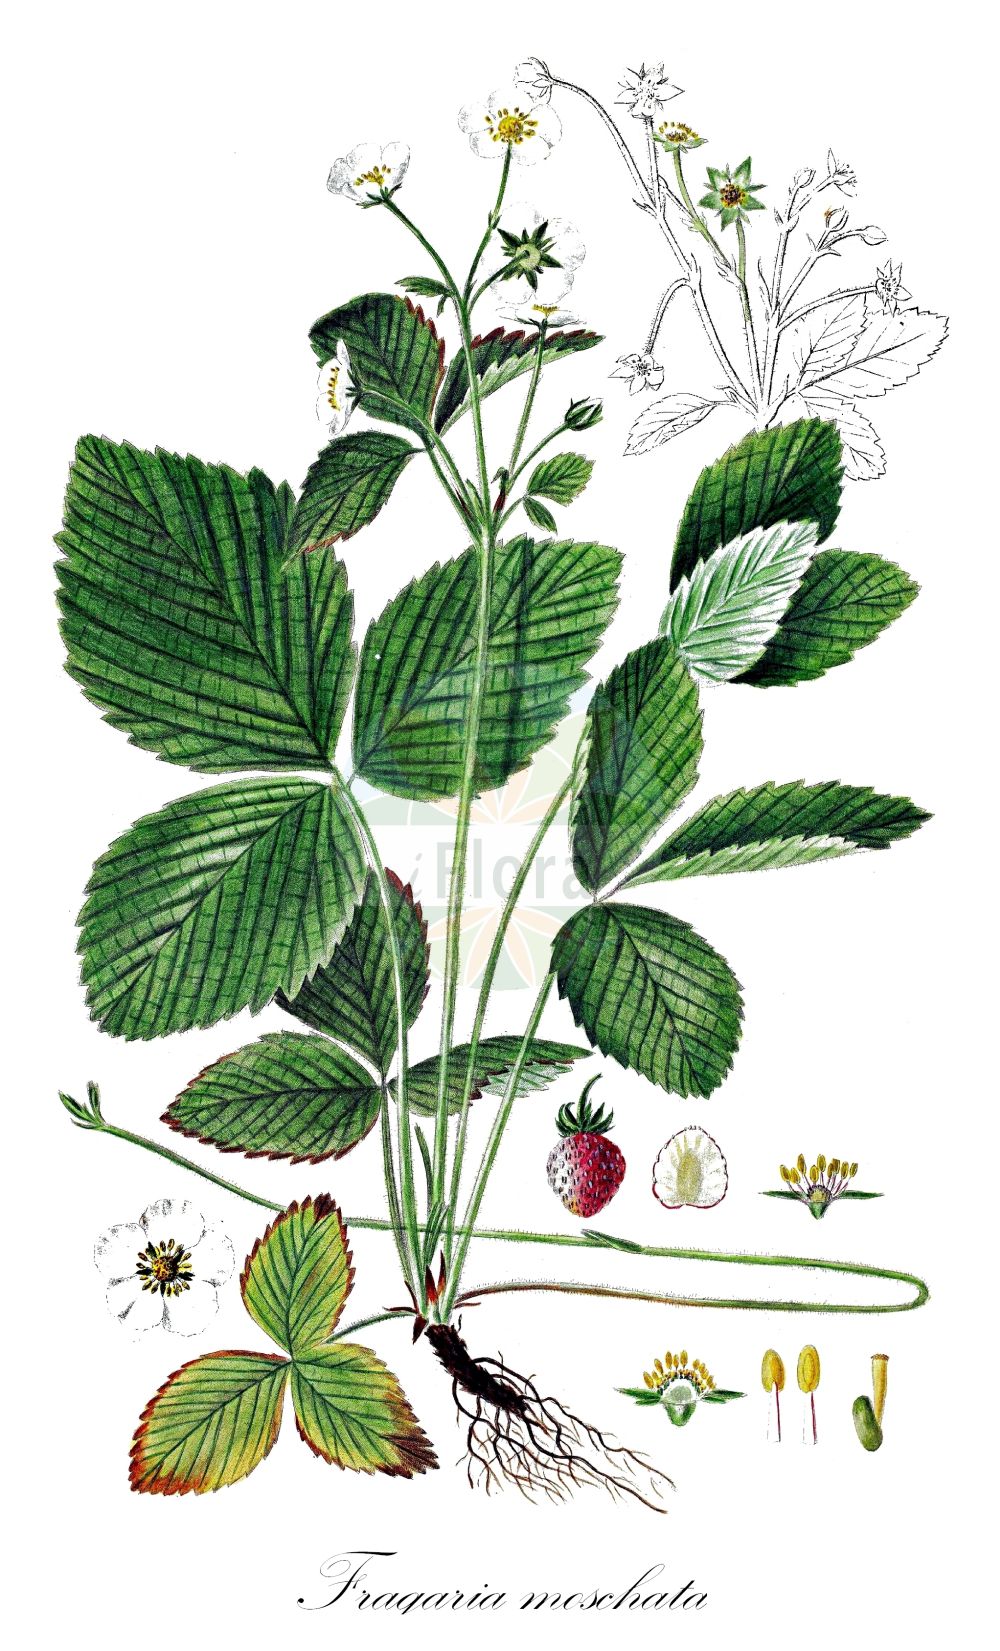 Historische Abbildung von Fragaria moschata (Zimt-Erdbeere - Hautbois Strawberry). Das Bild zeigt Blatt, Bluete, Frucht und Same. ---- Historical Drawing of Fragaria moschata (Zimt-Erdbeere - Hautbois Strawberry). The image is showing leaf, flower, fruit and seed.(Fragaria moschata,Zimt-Erdbeere,Hautbois Strawberry,Fragaria elatior,Fragaria magna,Fragaria moschata,Fragaria pratensis,Fragaria reversa,Potentilla moschata,Zimt-Erdbeere,Grosse Erdbeere,Hautbois Strawberry,Fragaria,Erdbeere,Strawberry,Rosaceae,Rosengewächse,Rose family,Blatt,Bluete,Frucht,Same,leaf,flower,fruit,seed,Oeder (1761-1883))